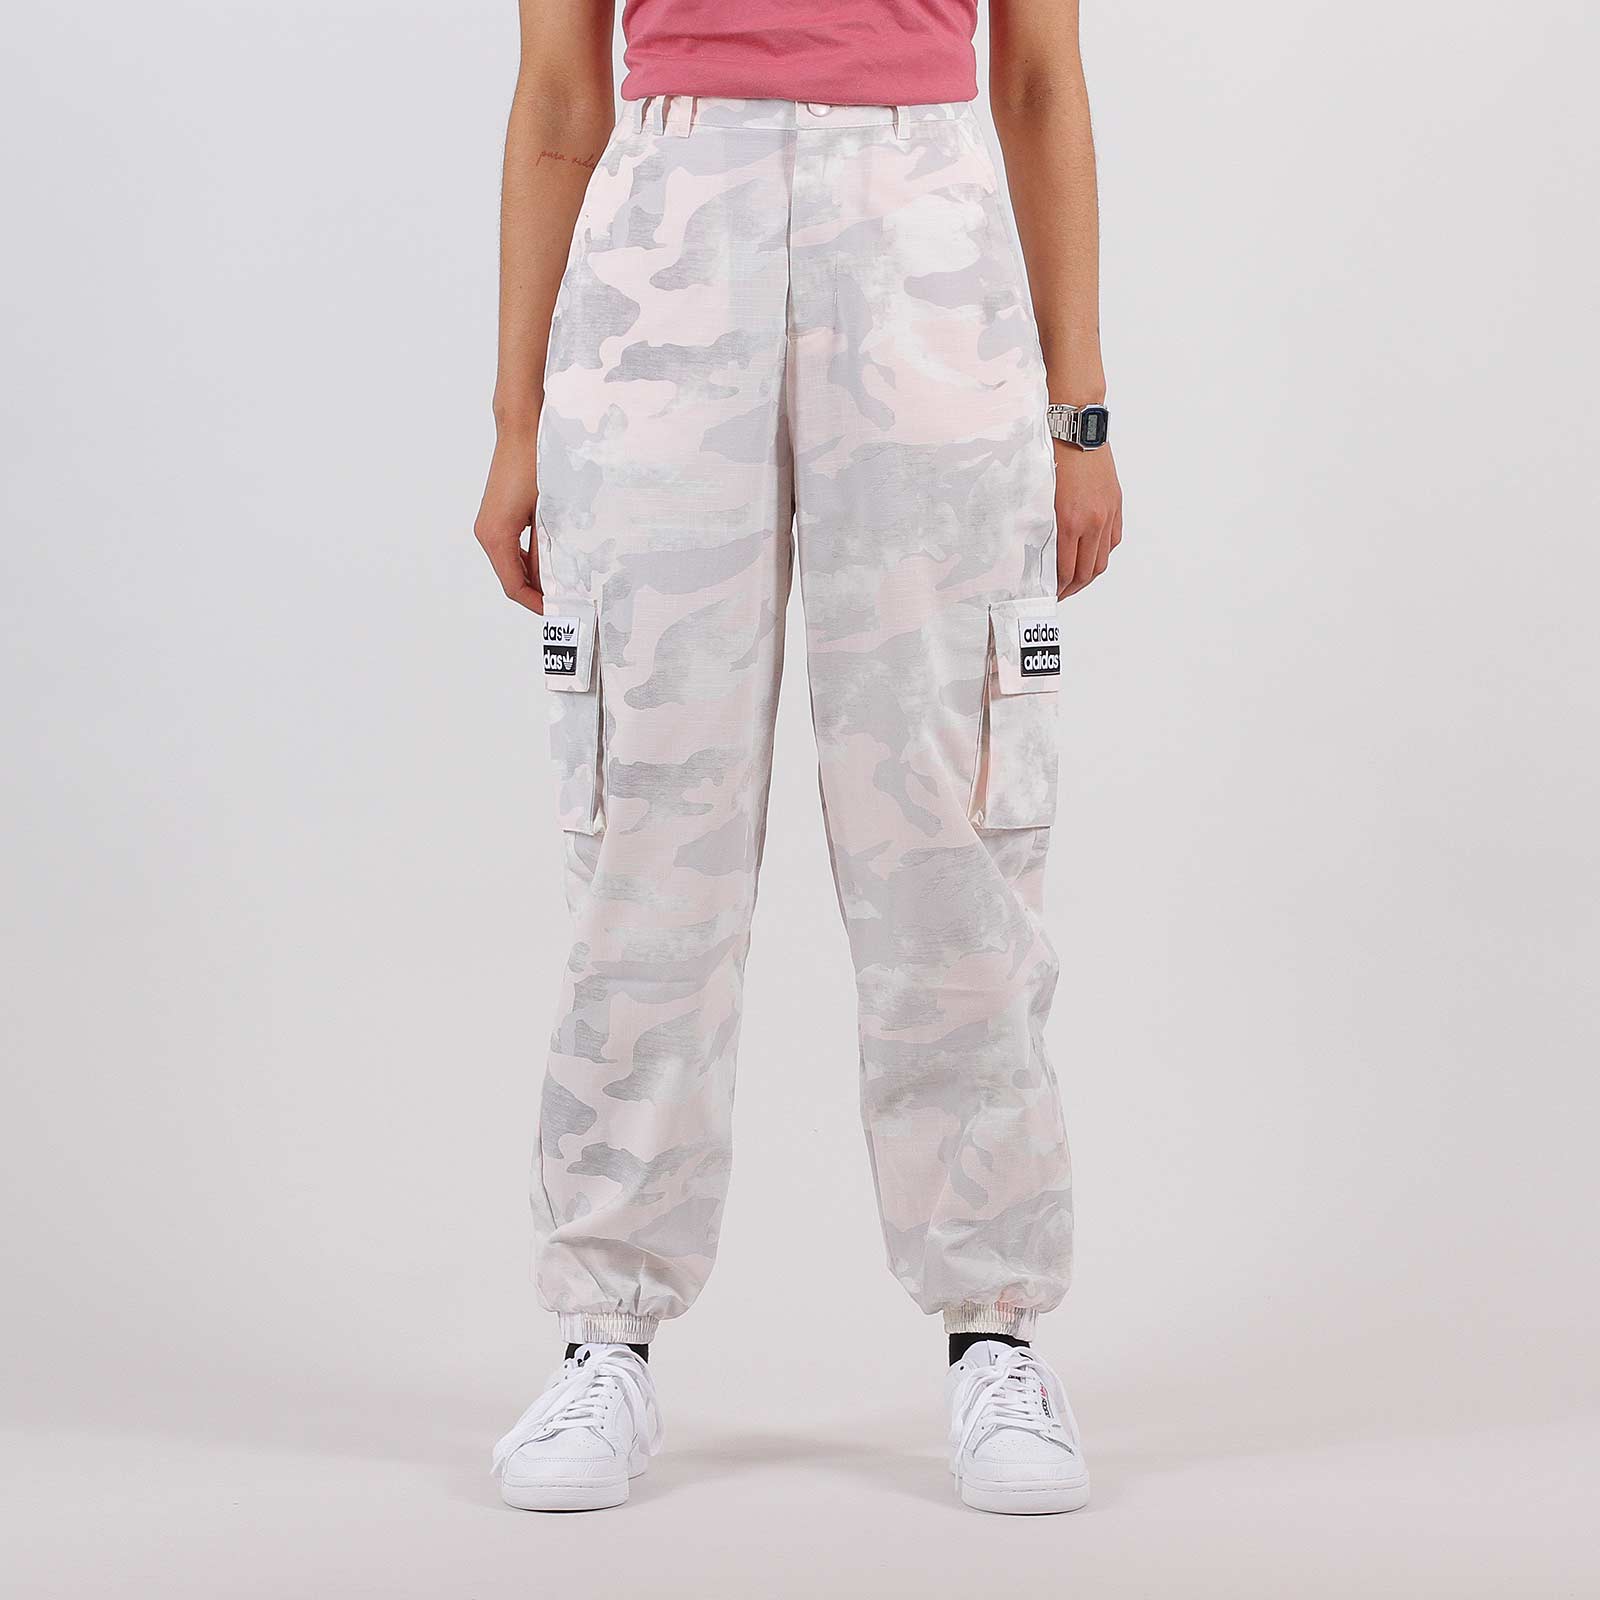 adidas pink pants womens